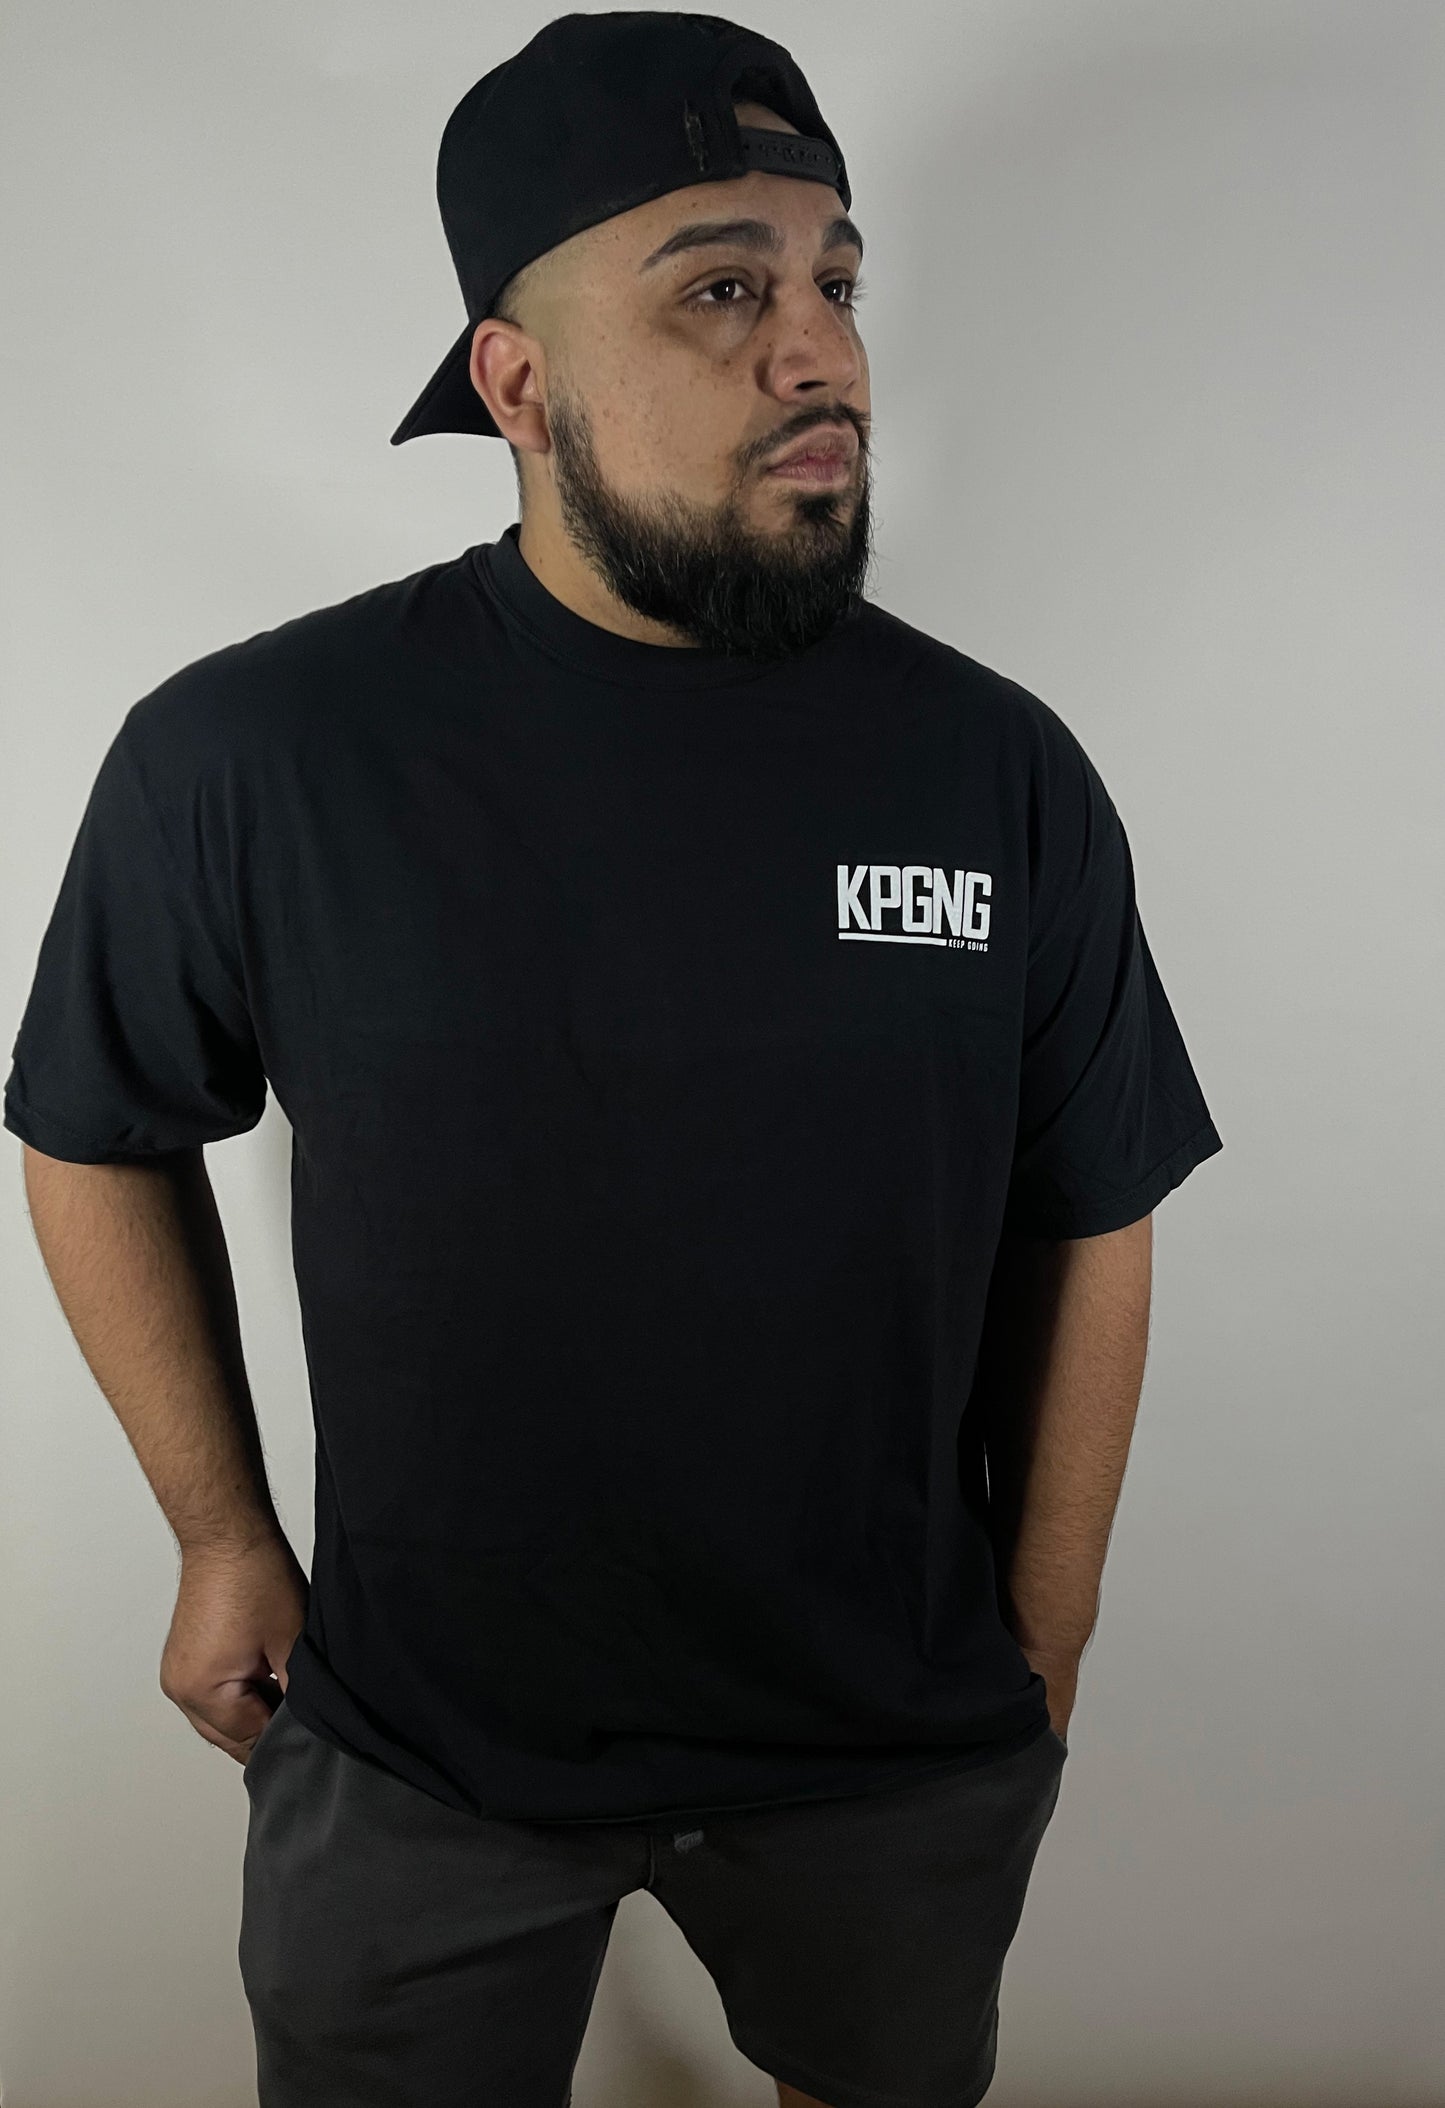 man wearing kpgng black shirt